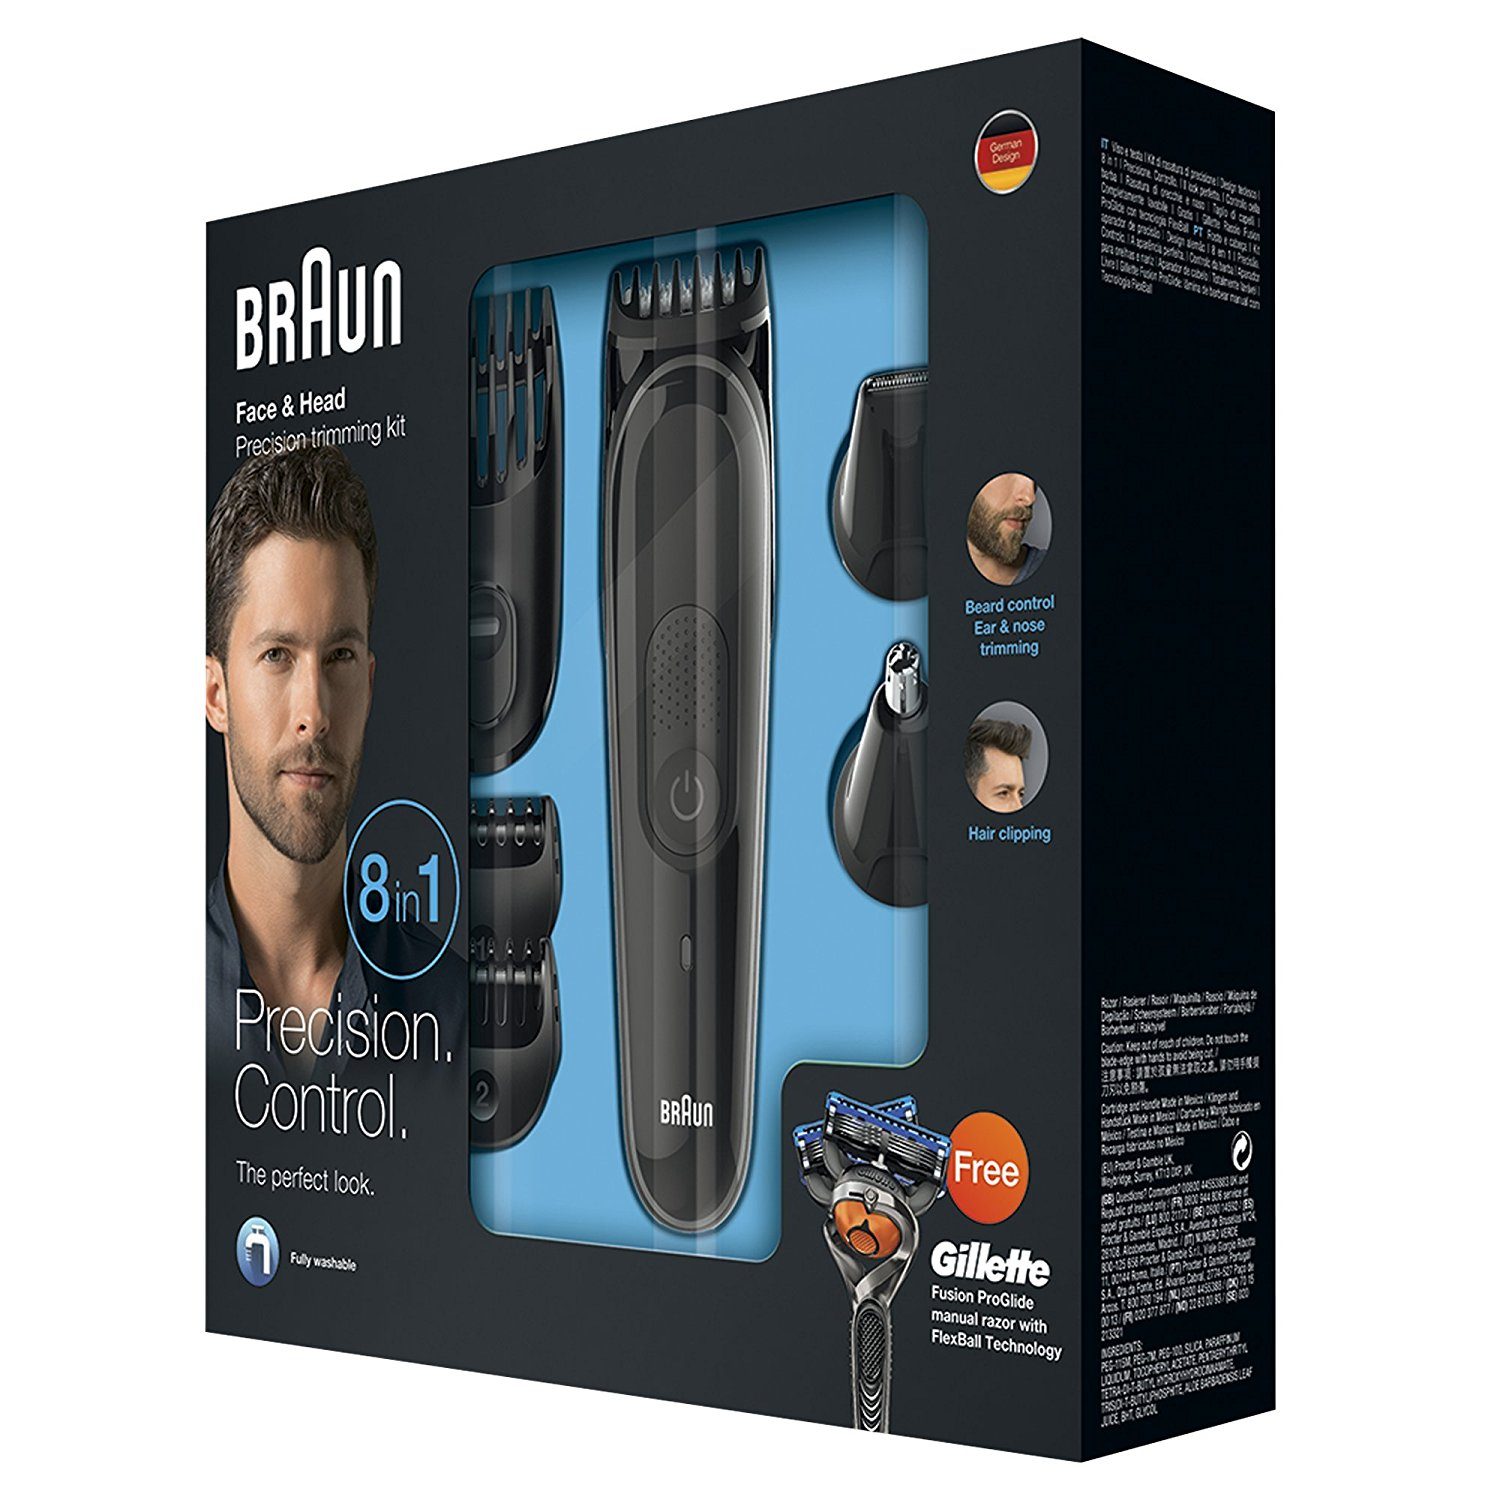 Braun MGK 3060 Multi grooming kit in box